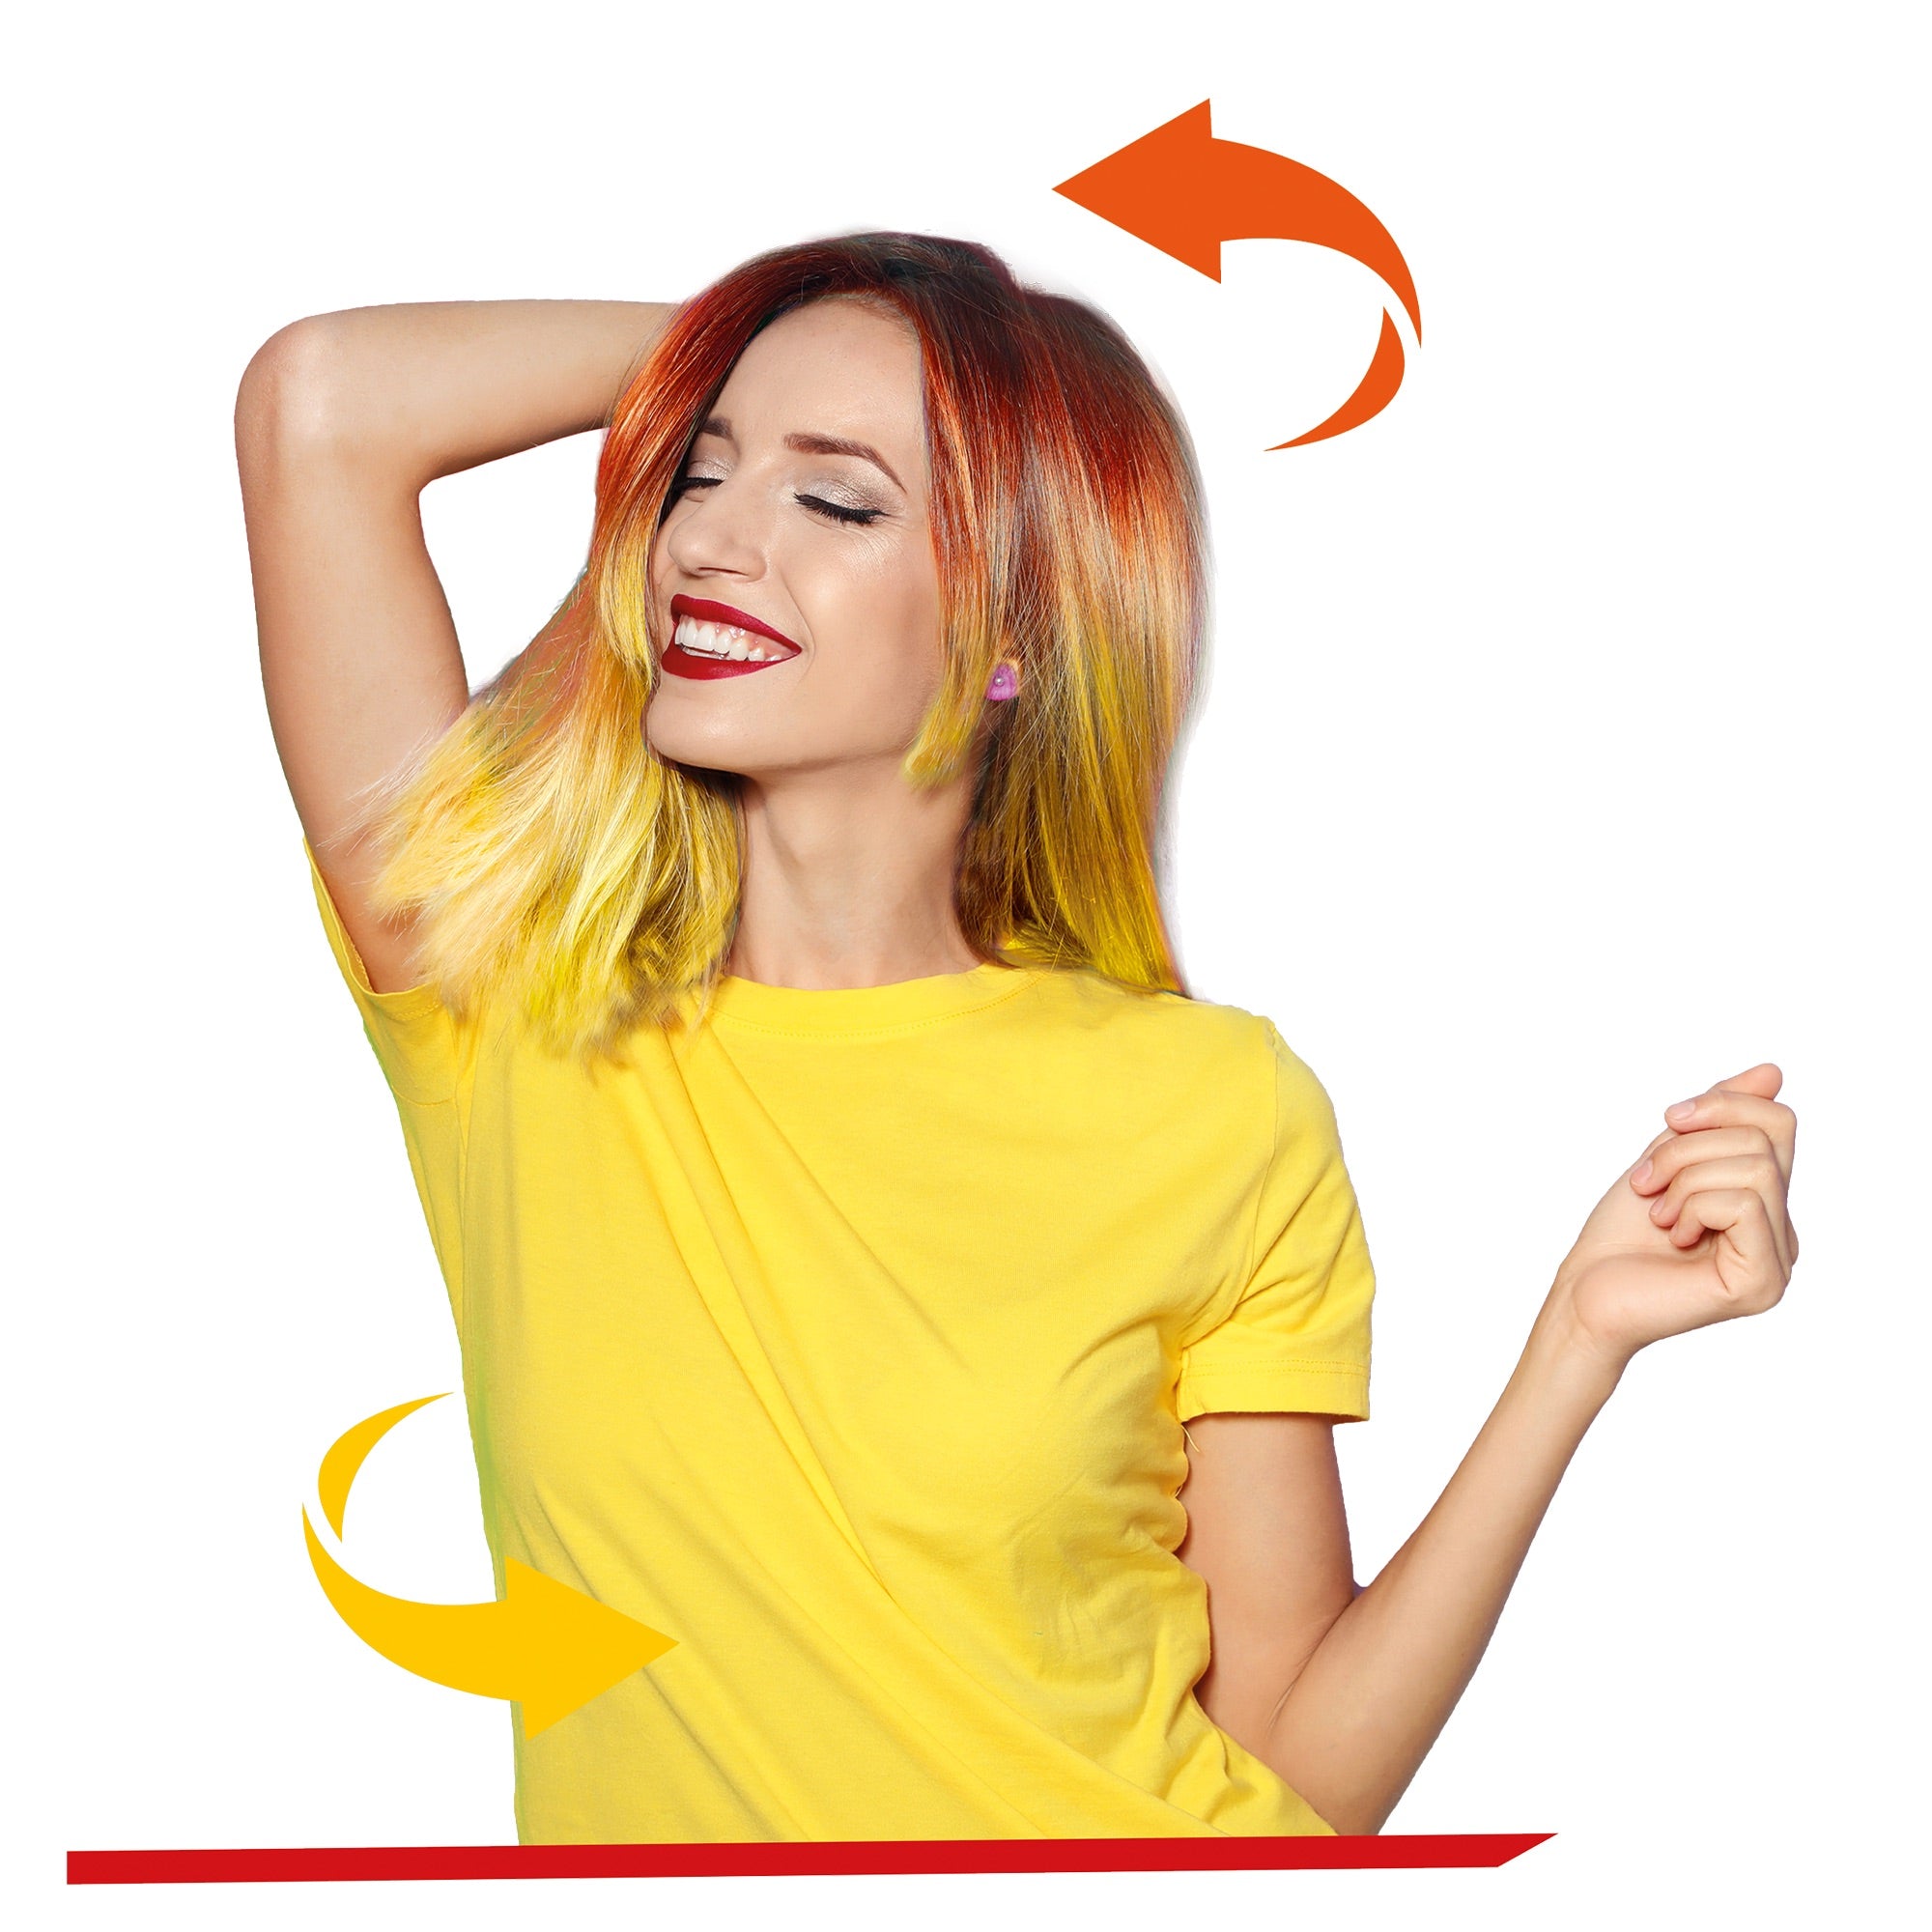 Morfose - Change Colour Hair Spray Orange to Yellow 150ml